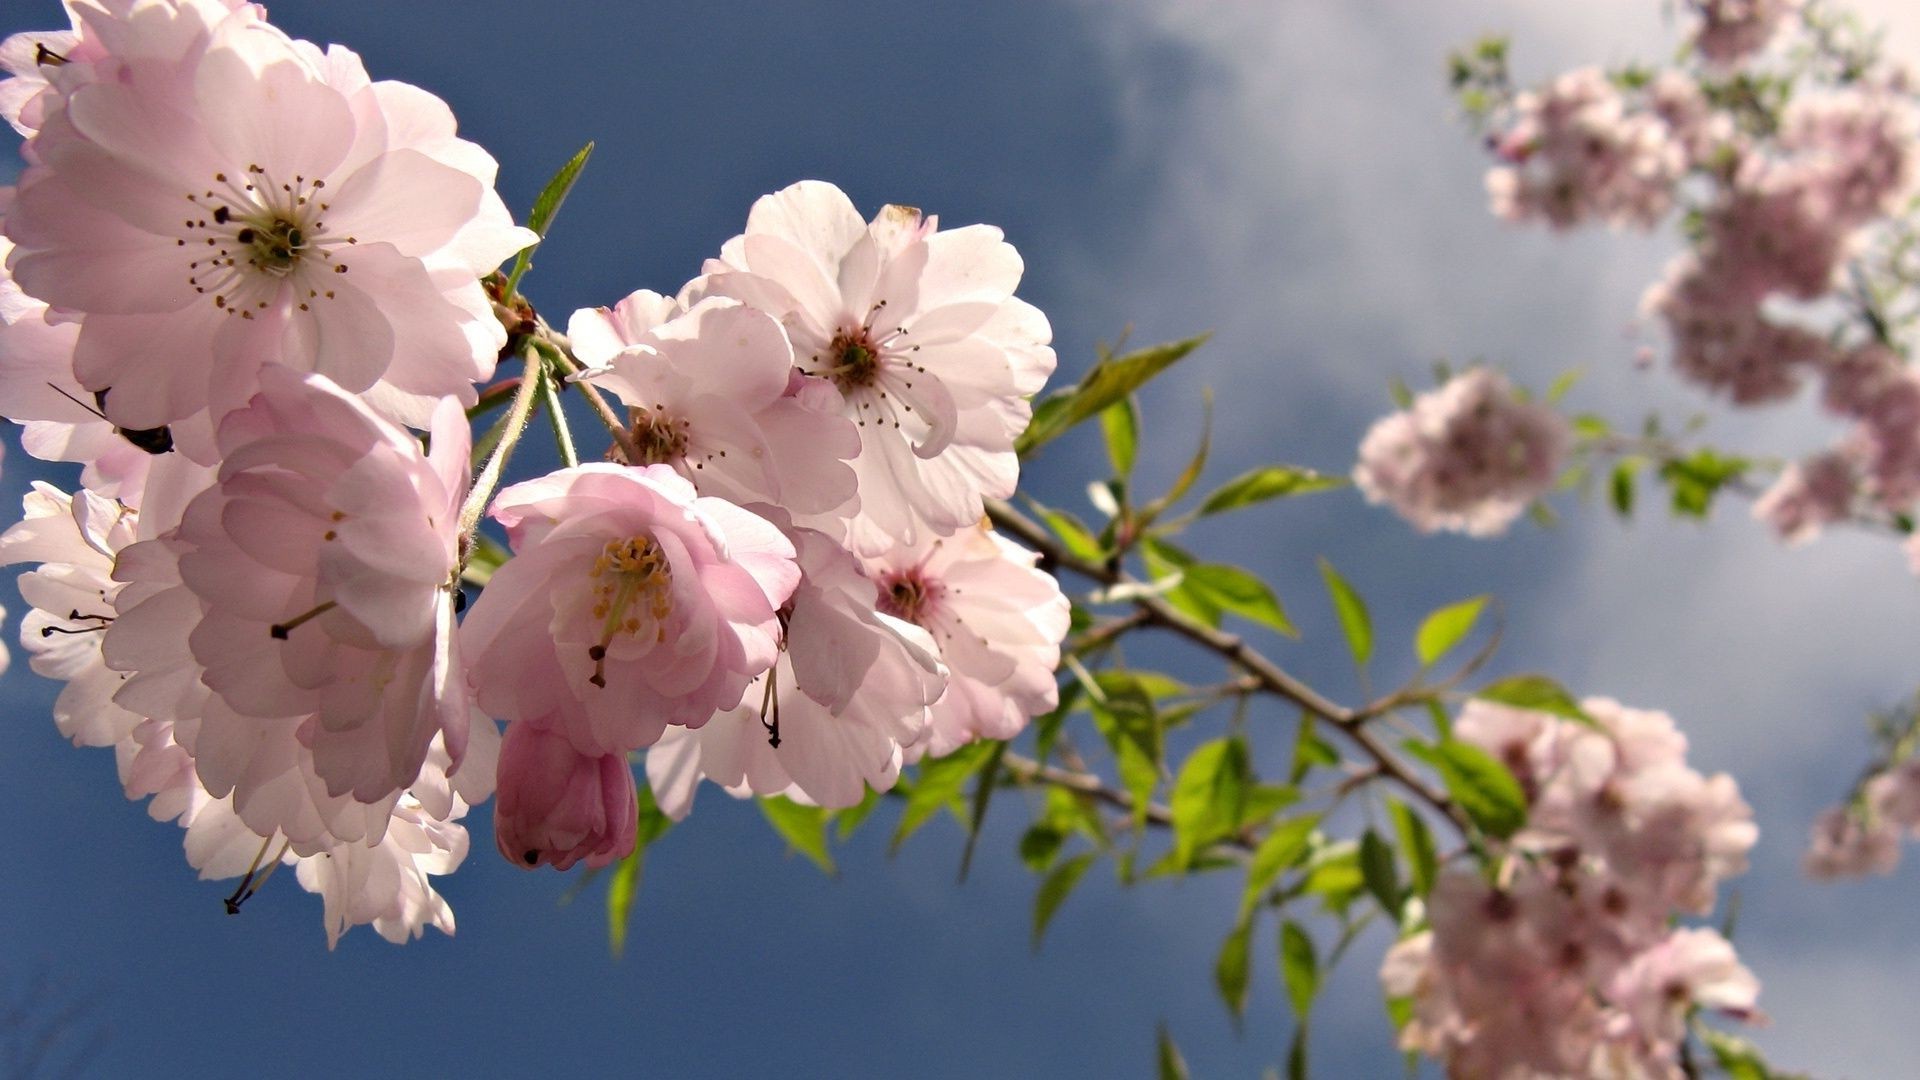 цветы на деревьях цветок вишня природа флора лист дерево филиал сад блюминг лепесток рост цветочные яблоко дружище лето нежный сезон на открытом воздухе